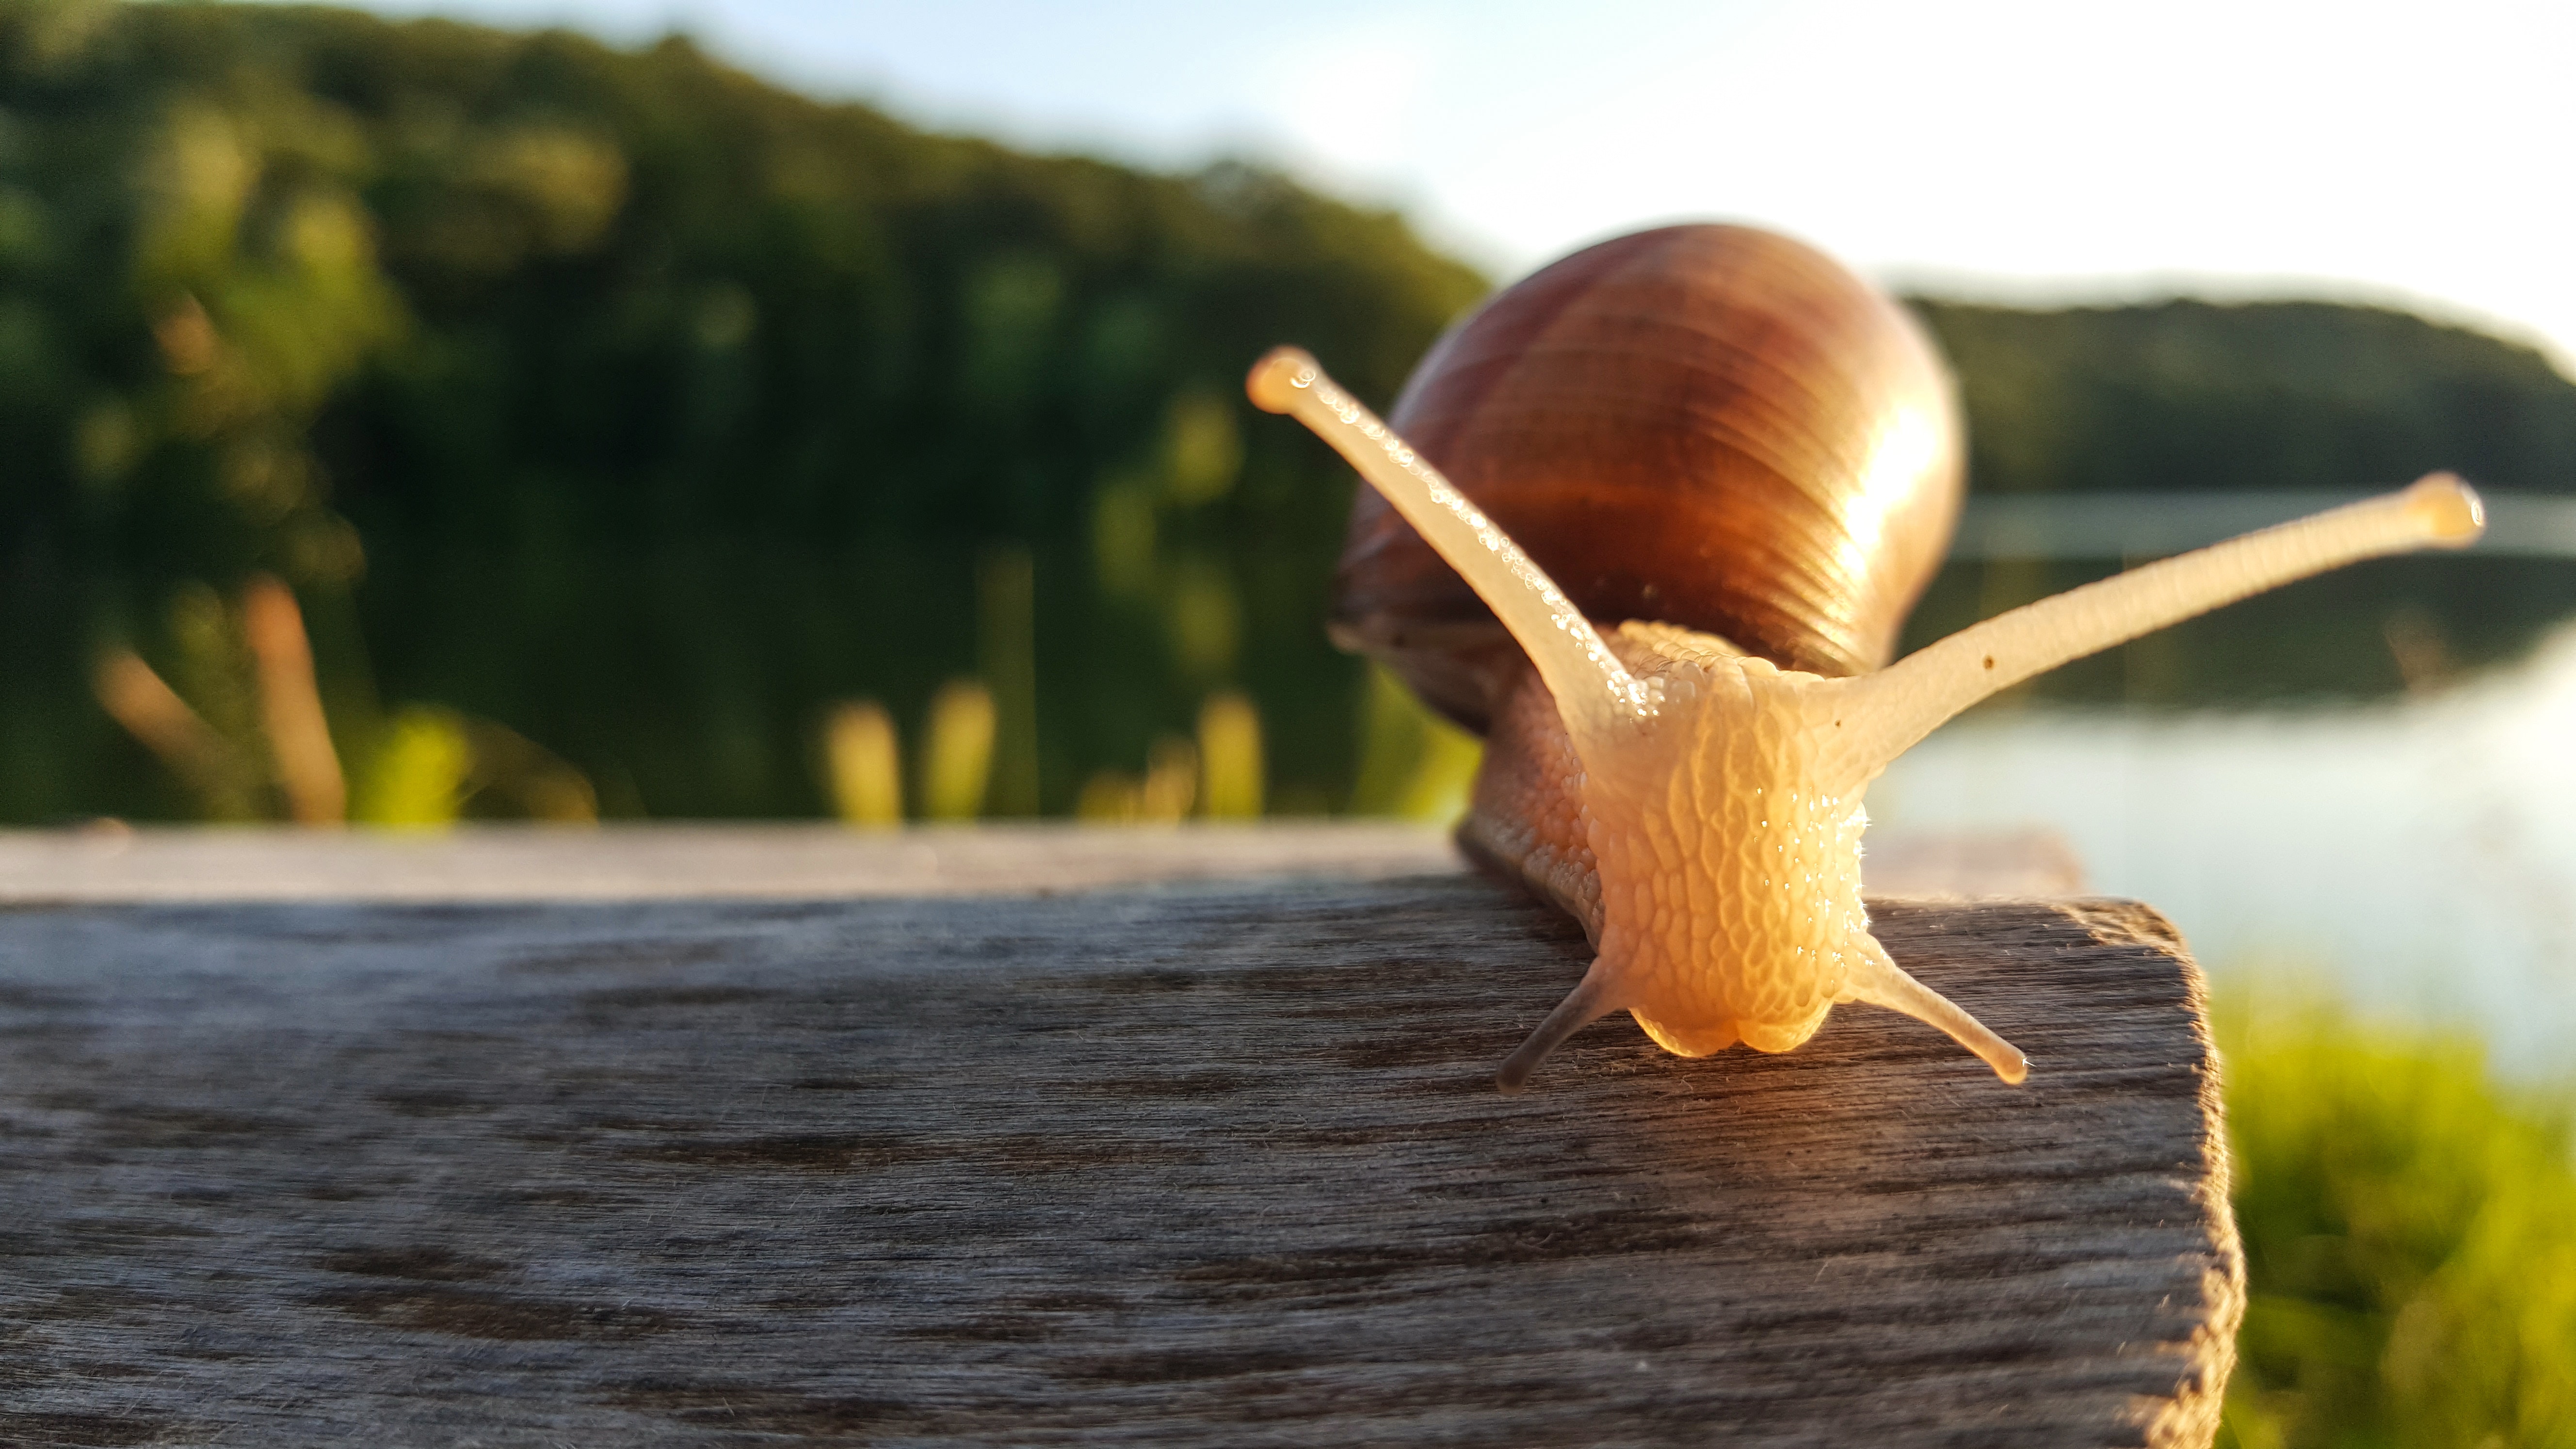 Snail on a Log